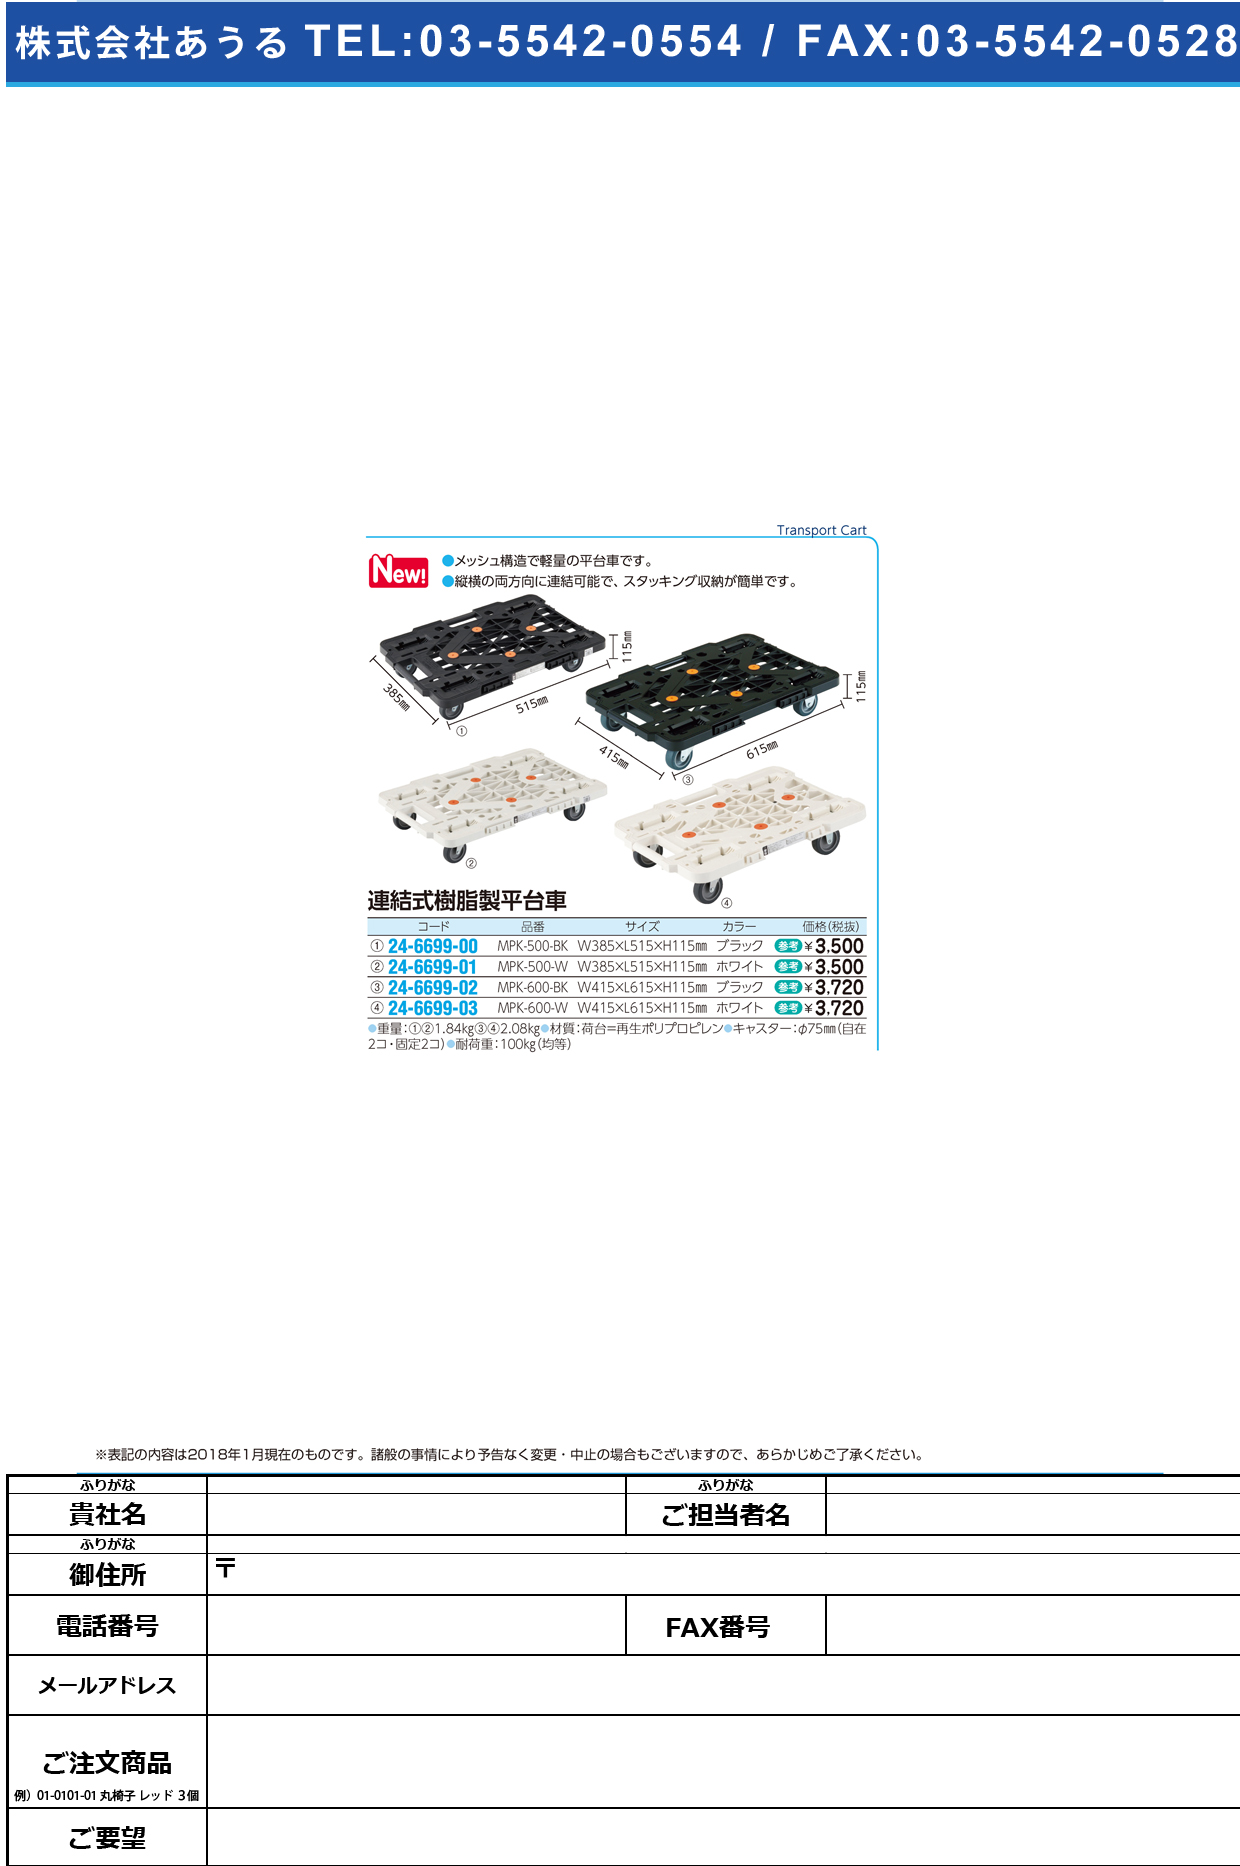 (24-6699-02)連結式樹脂製平台車 MPK-600-BK(ﾌﾞﾗｯｸ) ﾚﾝｹﾂｼﾞｭｼｾｲﾋﾗﾀﾞｲｼｬ【1台単位】【2018年カタログ商品】